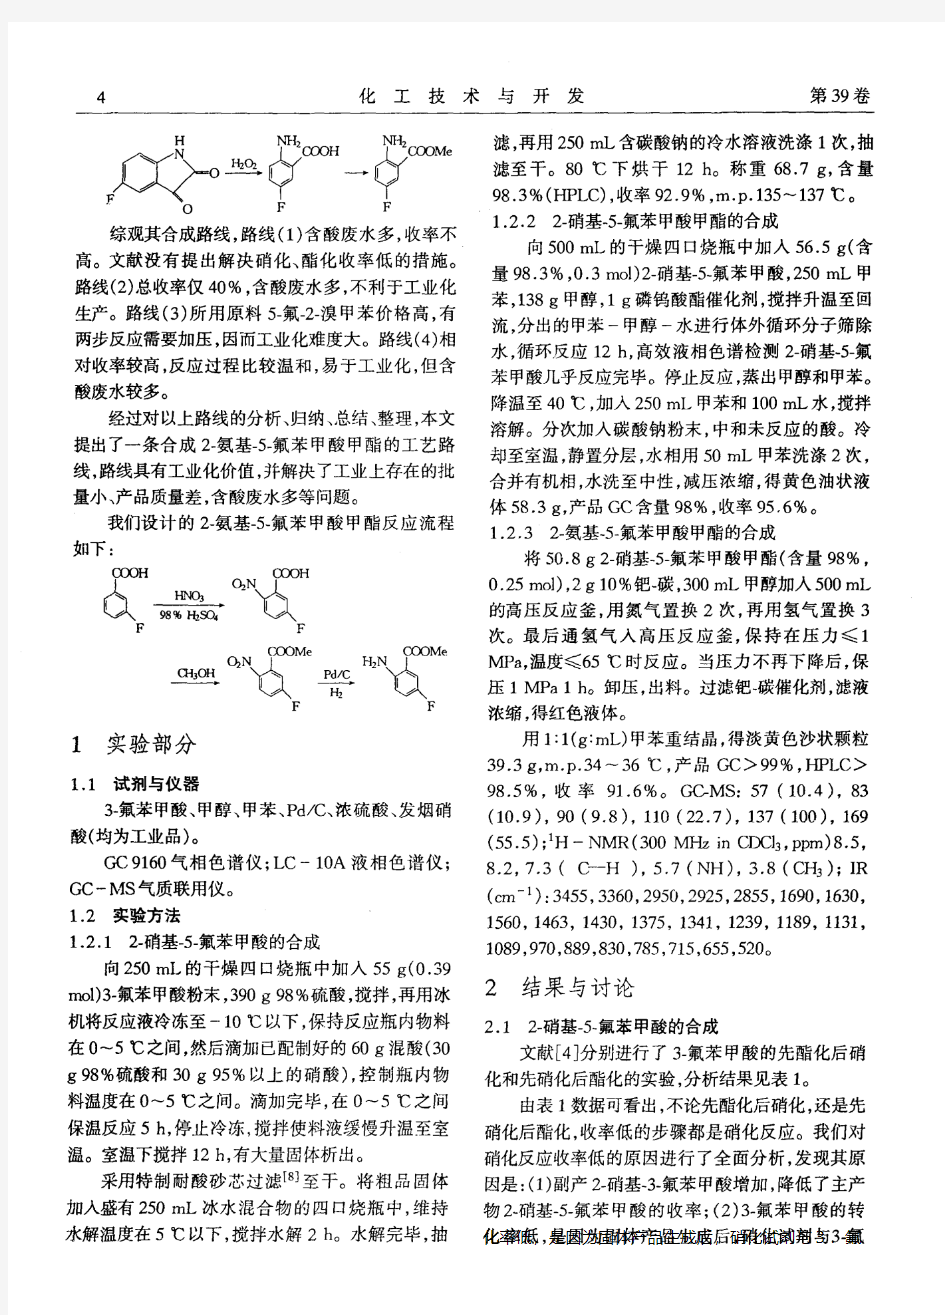 2-氨基-5-氟苯甲酸甲酯的合成工艺及过程优化